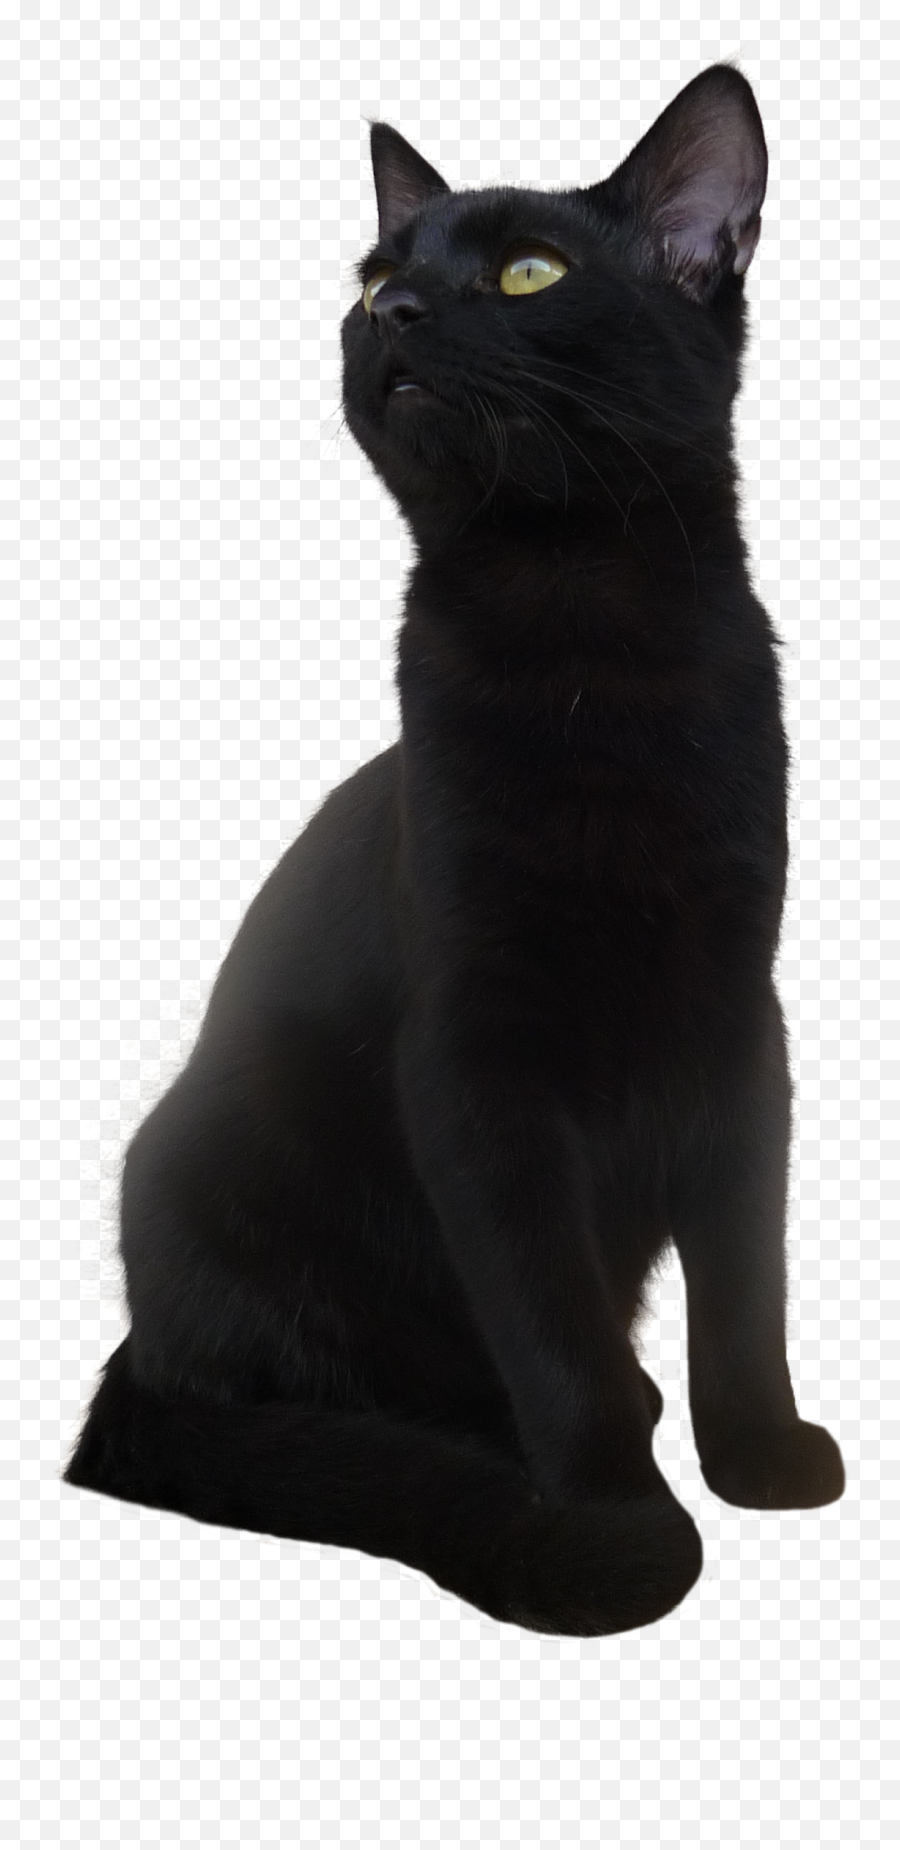 Black Cat Png Transparent Picture - Aile Chauve Souris Chat,Transparent Cat